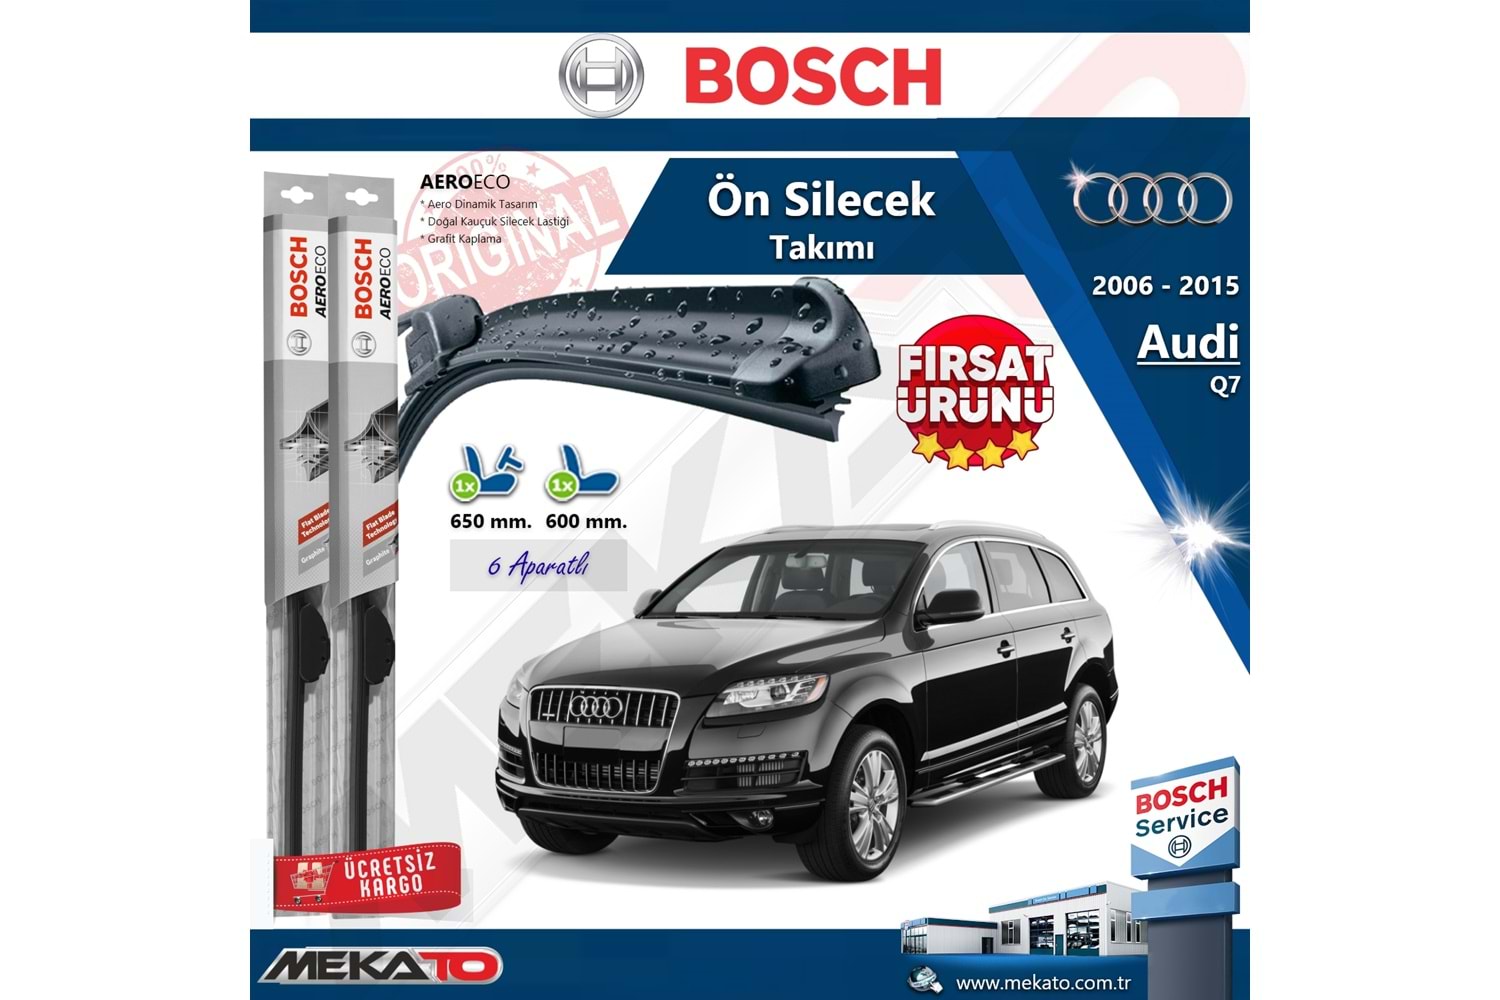 Audi Q7 Ön Silecek Takımı Bosch Aero Eco 2006-2015